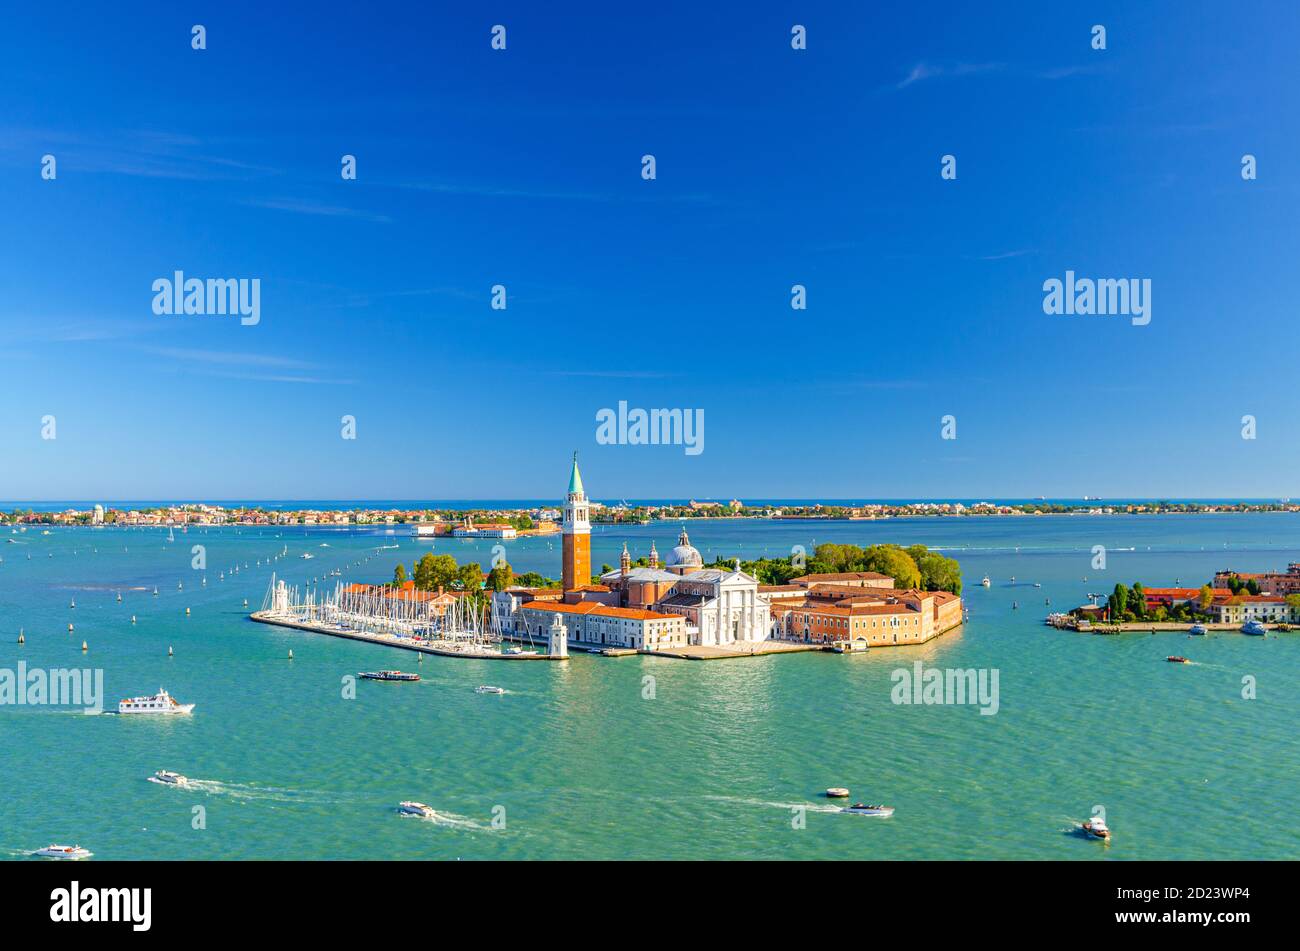 Luftpanorama der Insel San Giorgio Maggiore mit Campanile San Giorgio in der Lagune von Venedig, Segelboote im Markusbecken, Lido Insel, blauer Himmel Hintergrund, Venedig Stadt, Venetien Region, Italien Stockfoto